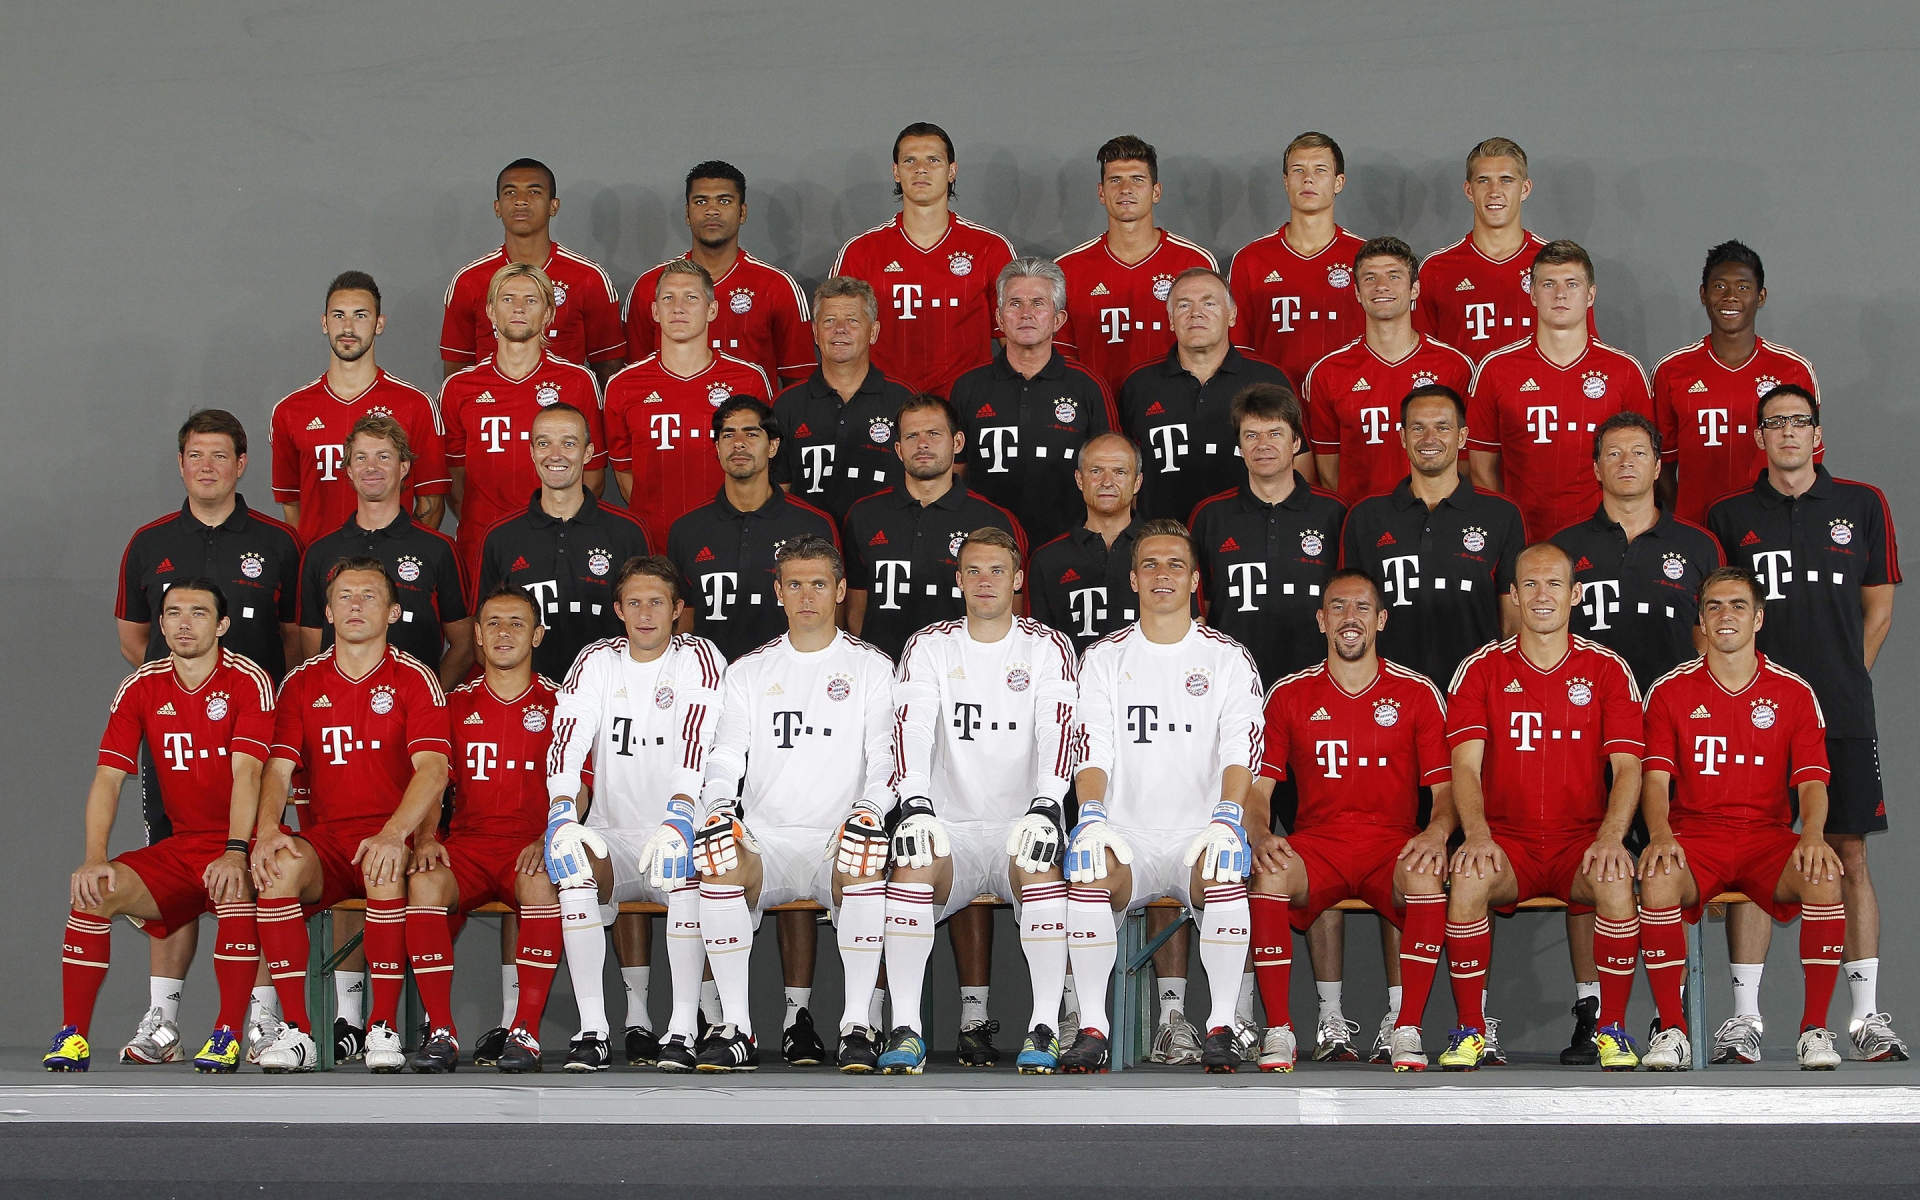 FC Bayern Munchen 2012 2013 for 1920 x 1200 widescreen resolution